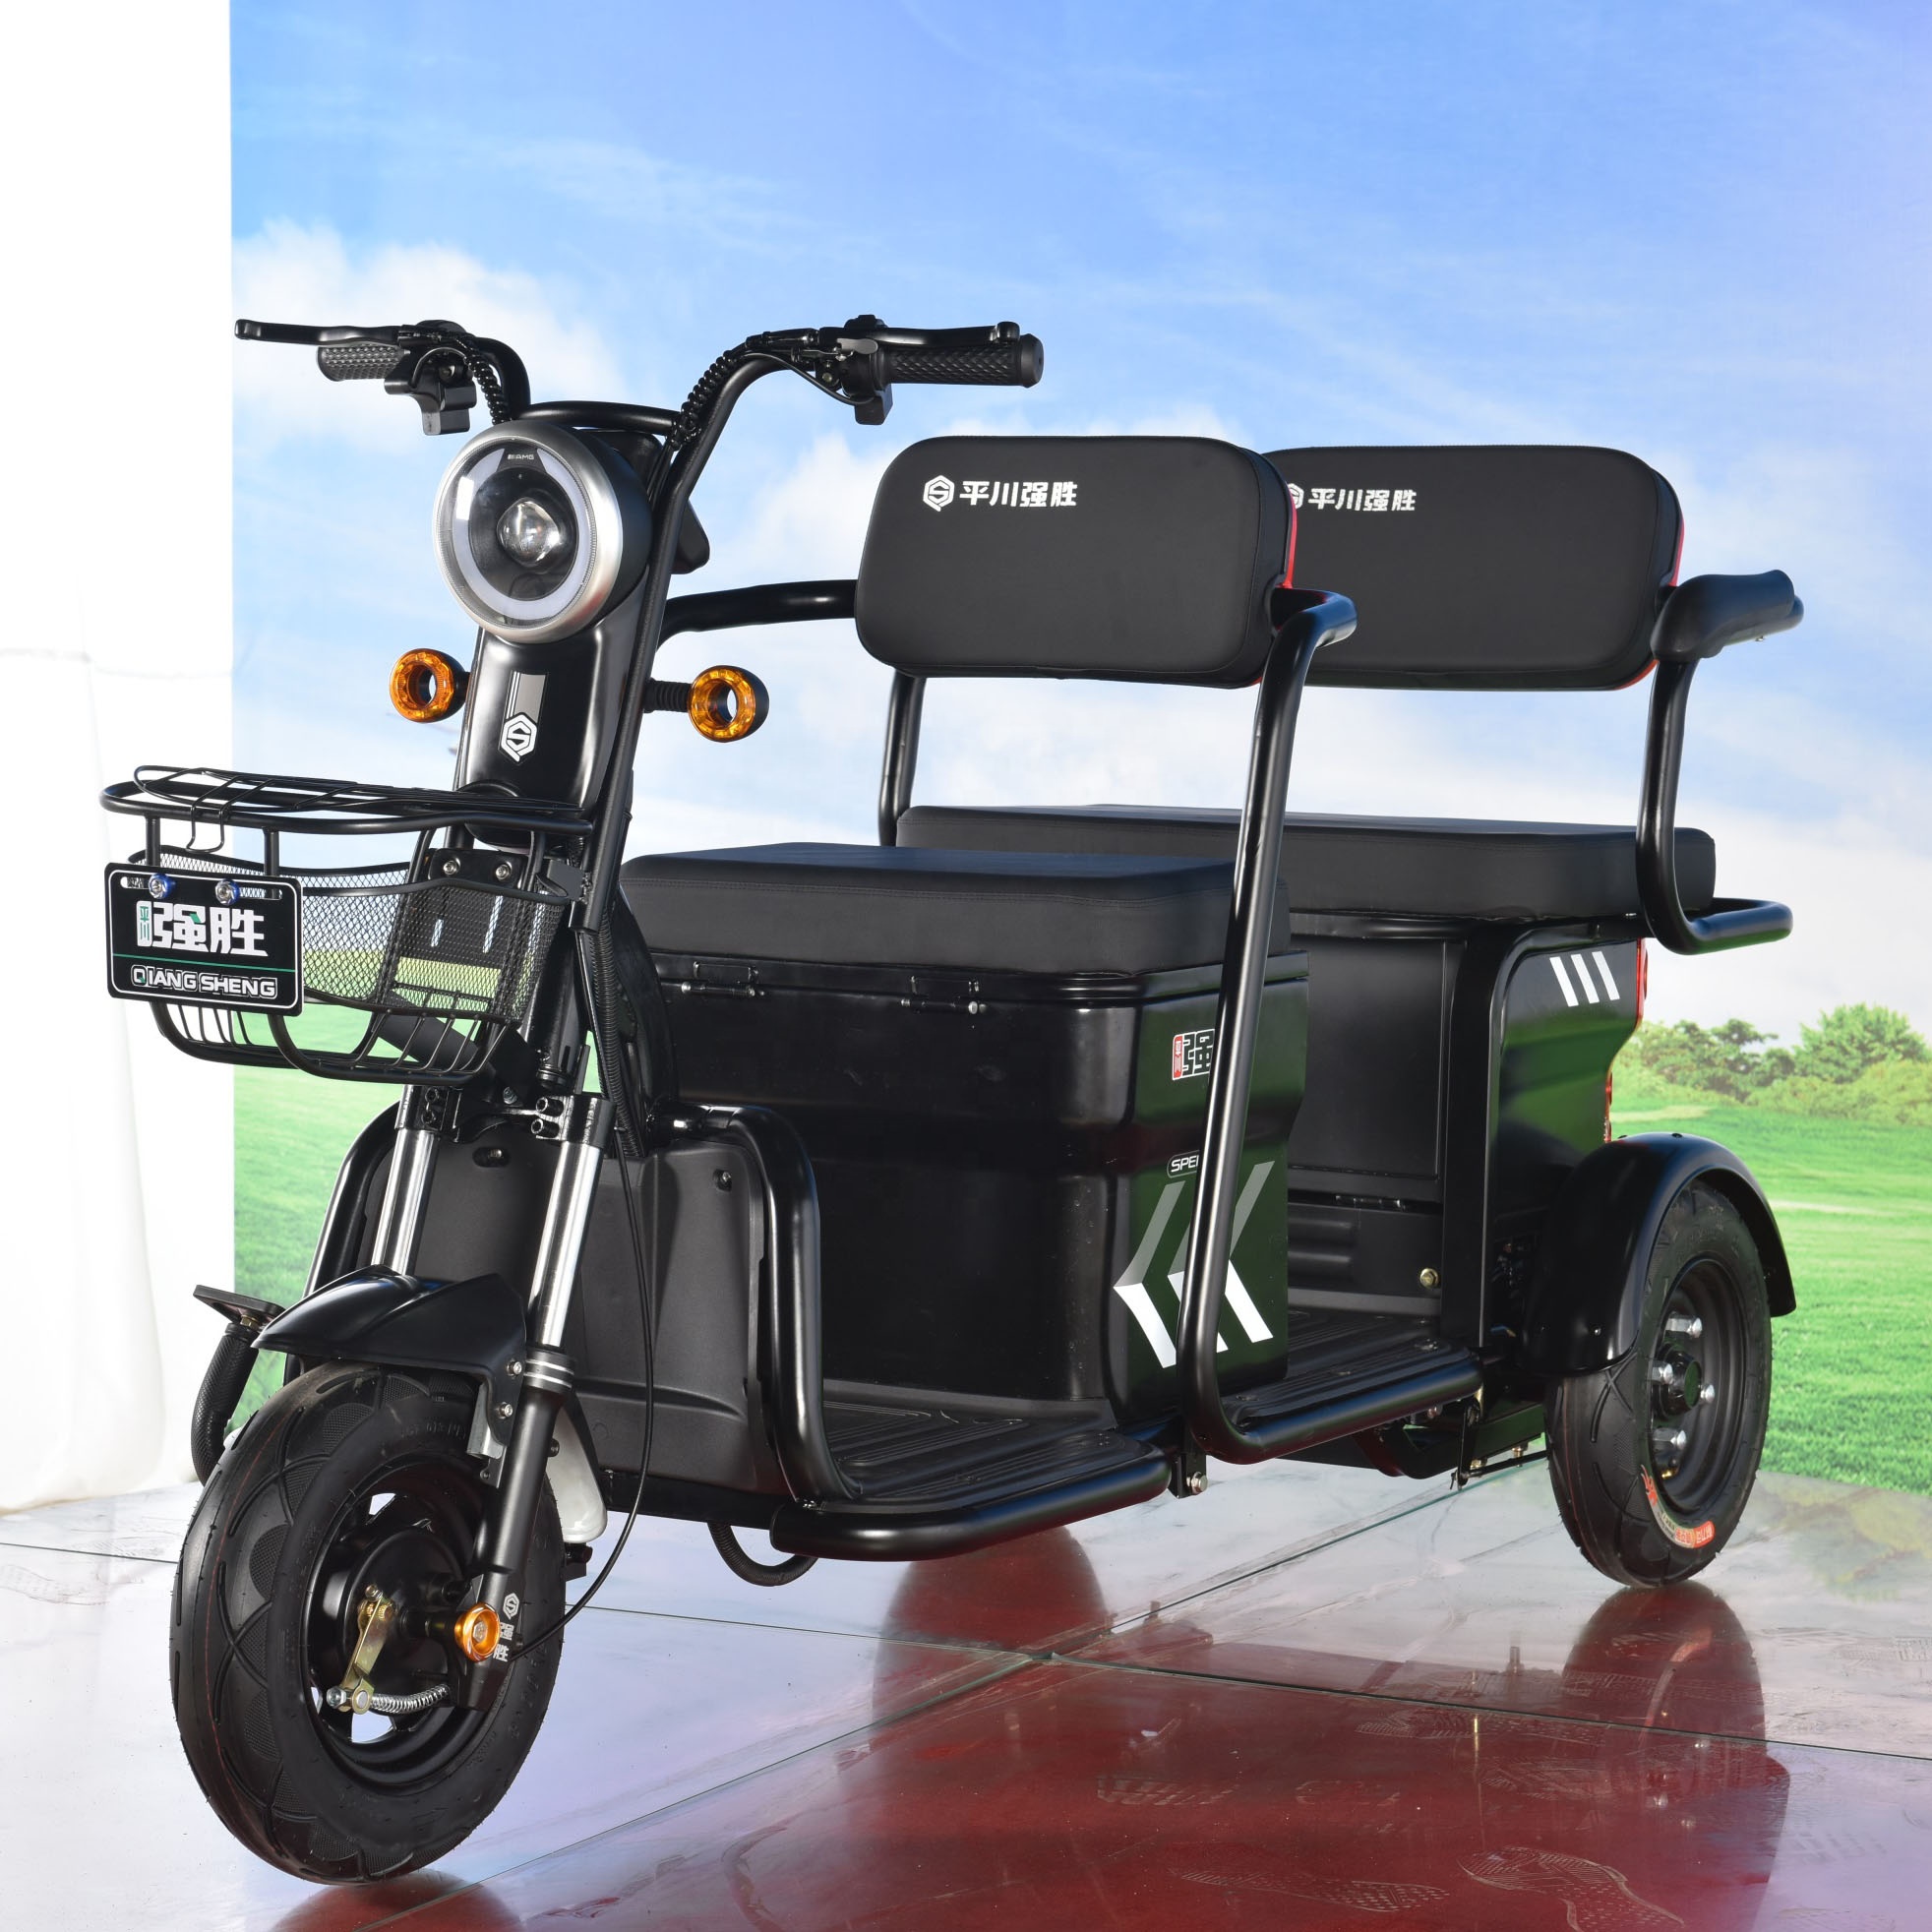 2021 mini rickshaw bajaj three wheeler electric motorbike toto motor wholesale price